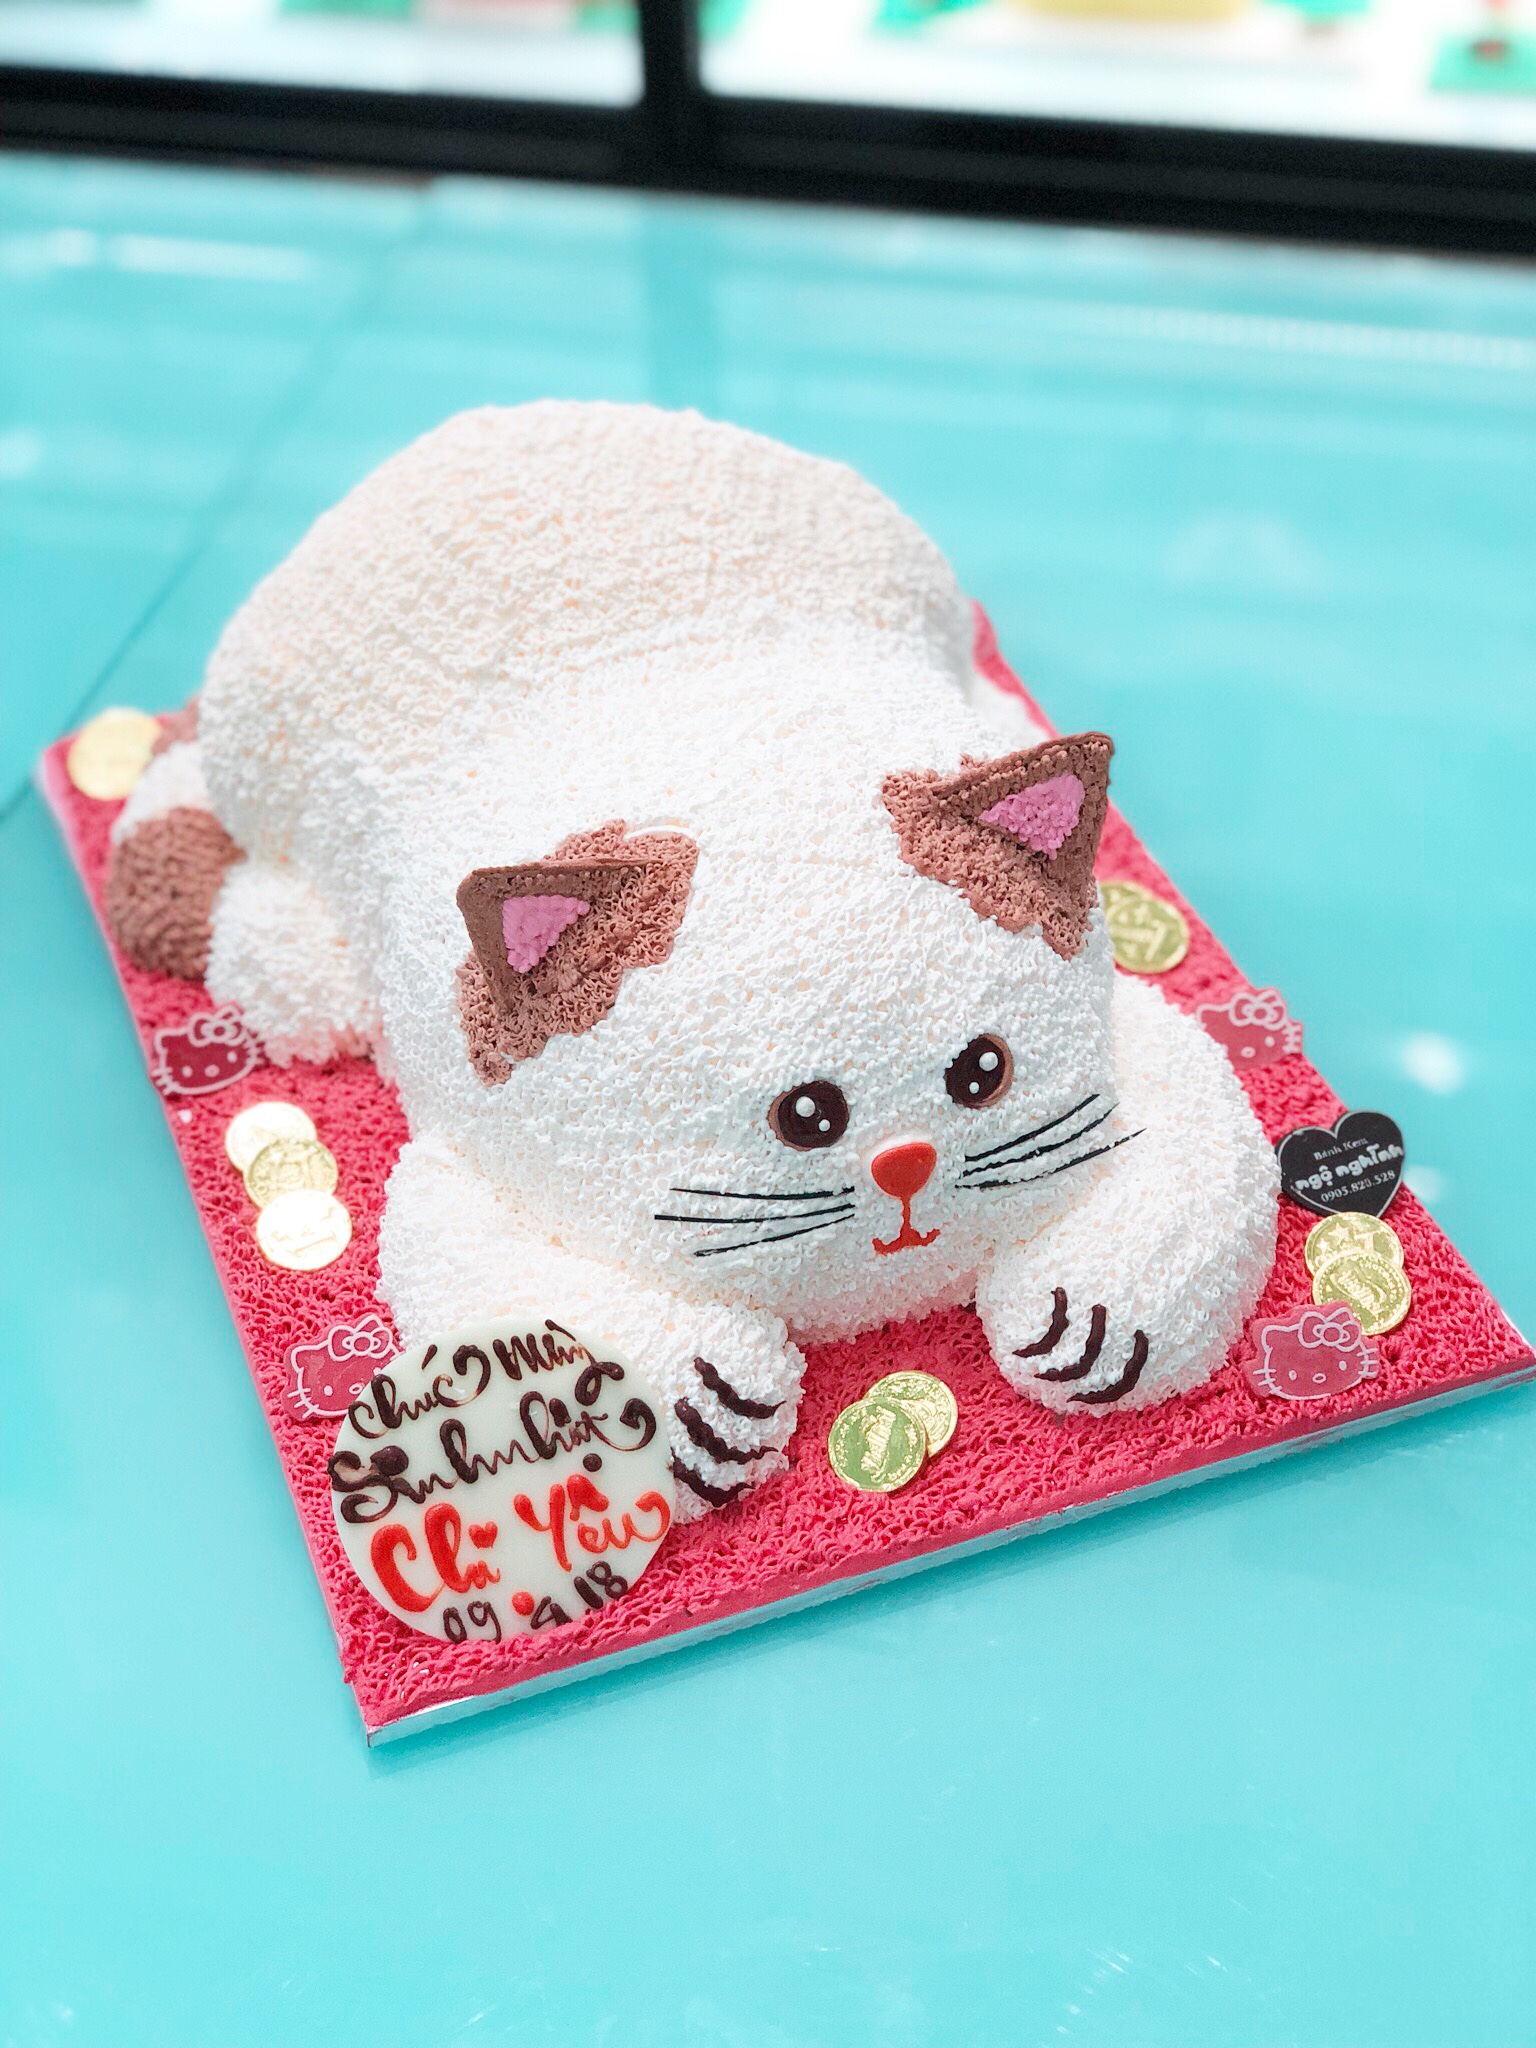 Bắn nh sinh nhật - Nếu bạn đang tìm kiếm ý tưởng cho bữa tiệc sinh nhật của mình, hãy nhấp chuột vào hình ảnh về bánh sinh nhật thật độc đáo và thú vị này để tham khảo những món bánh đáng yêu và ngon miệng.